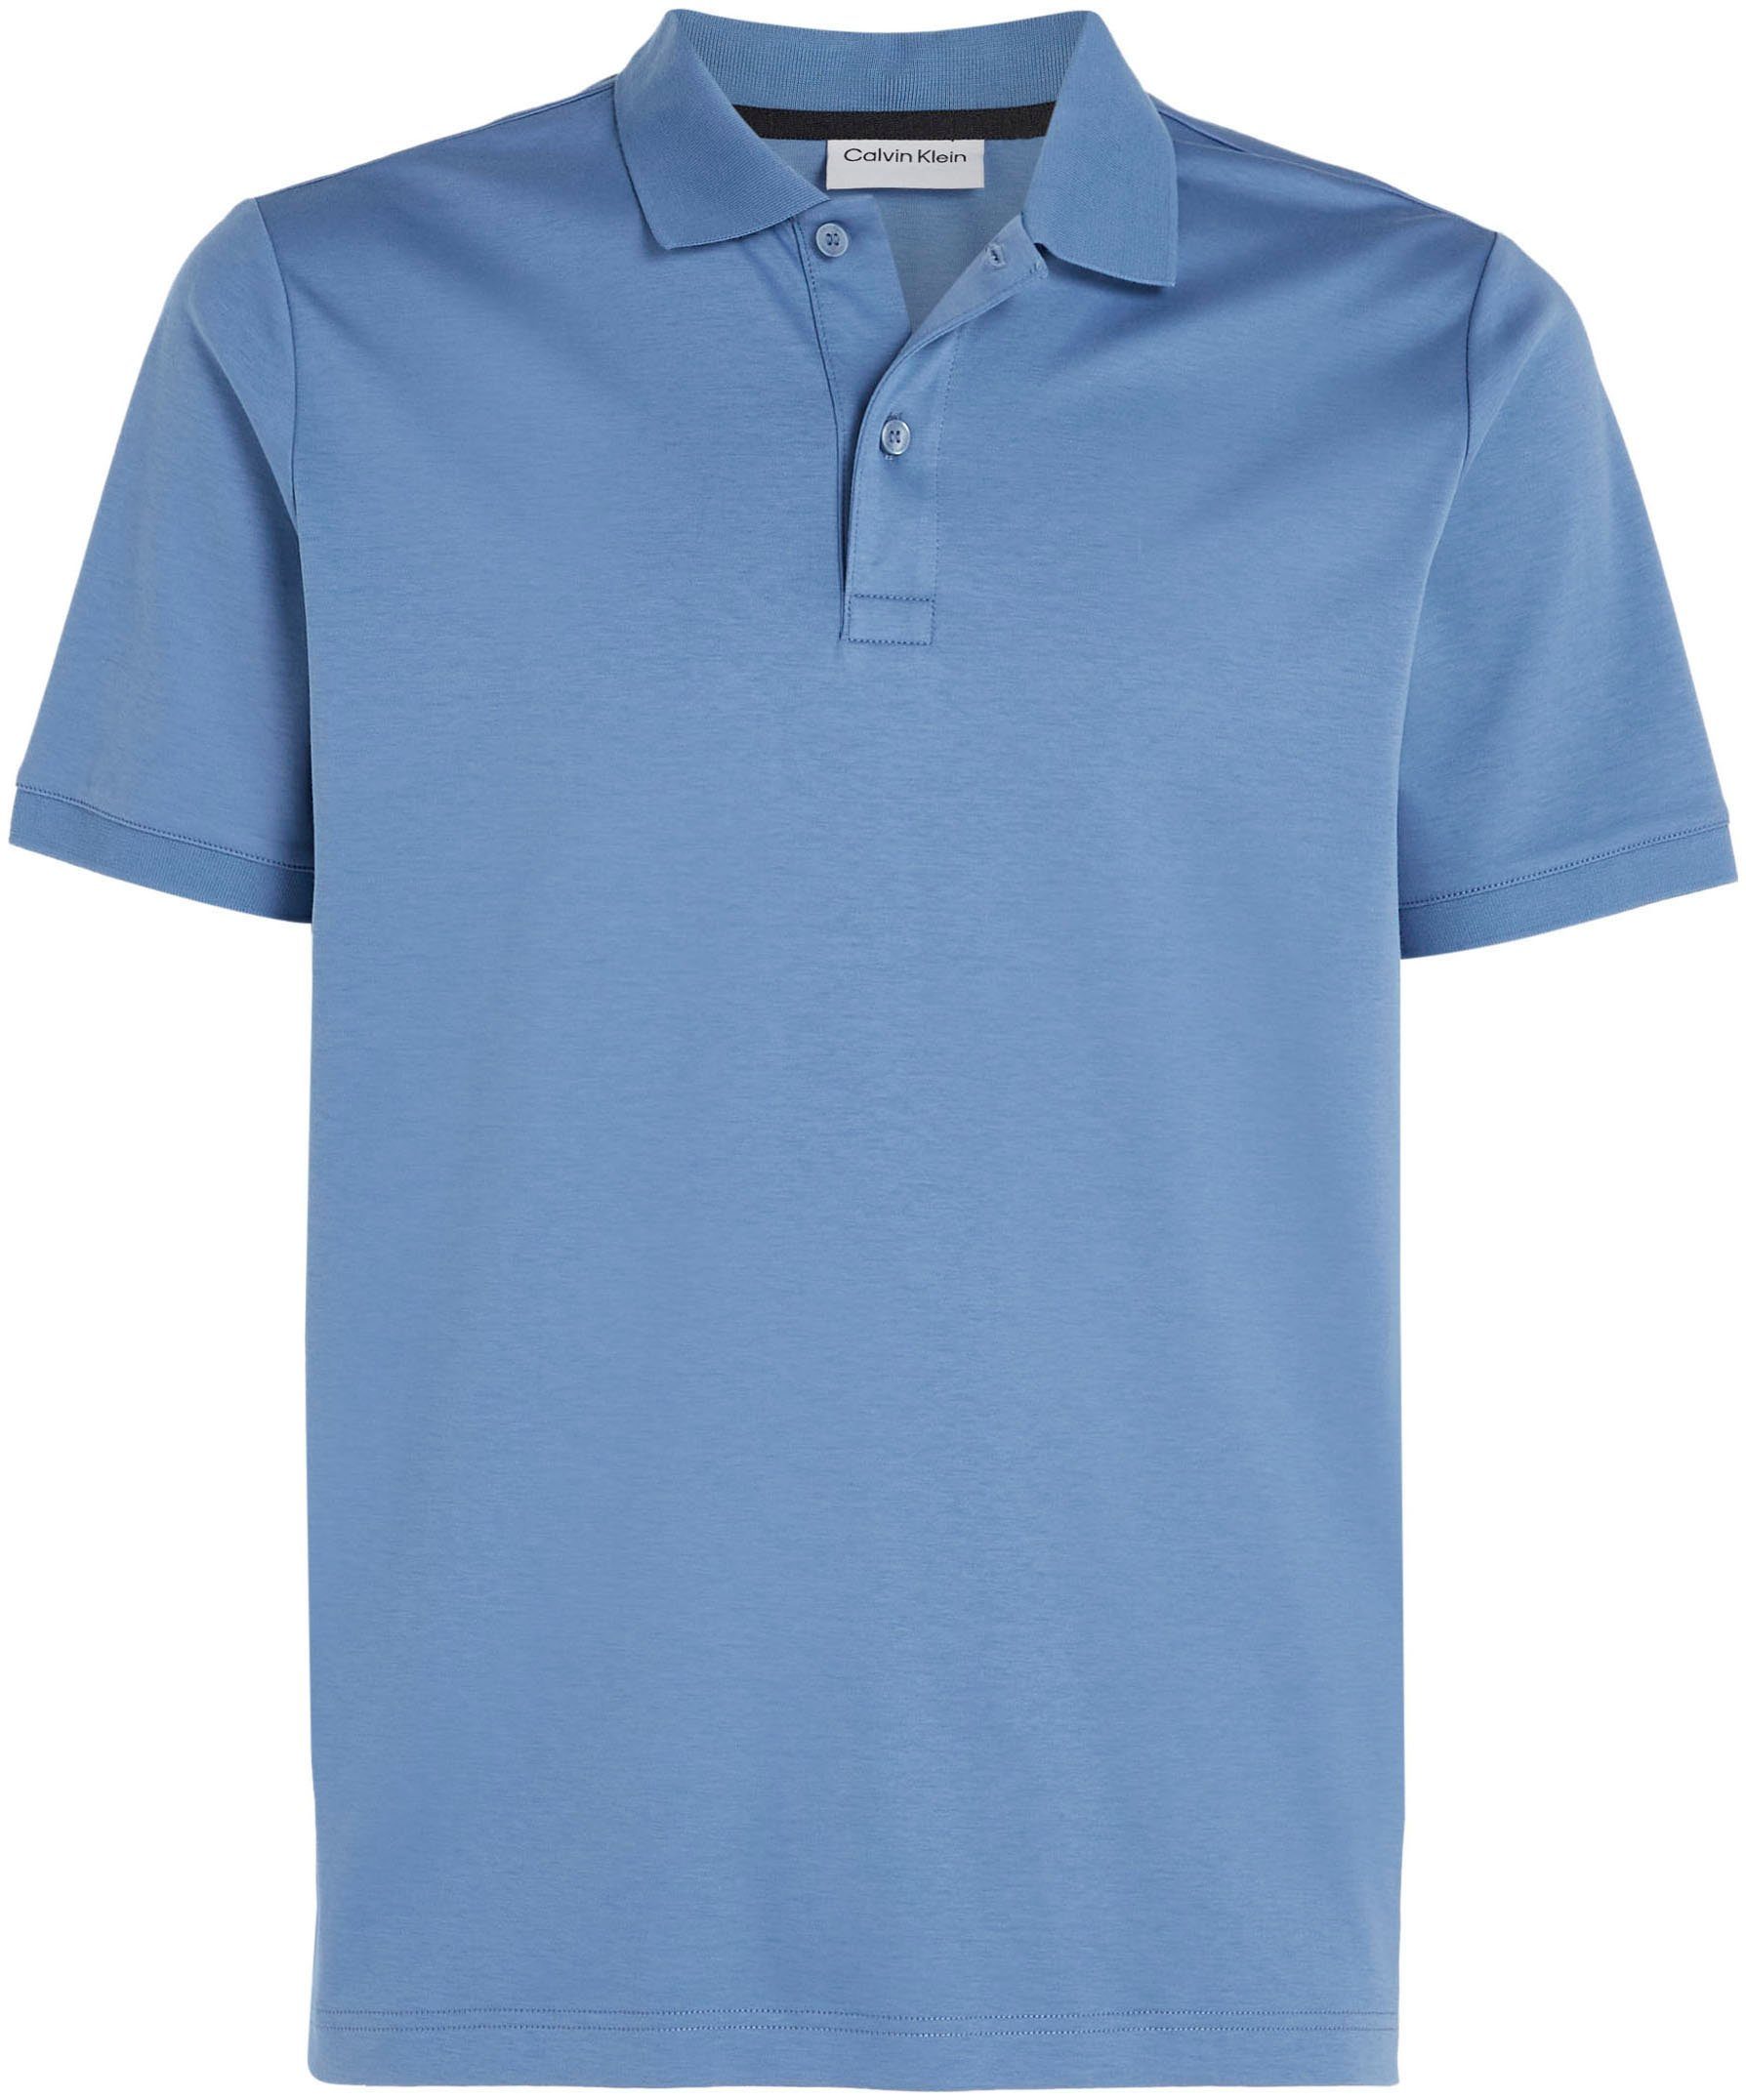 Logo Poloshirt auf Klein Brust blue iron Calvin mit Calvin der Klein